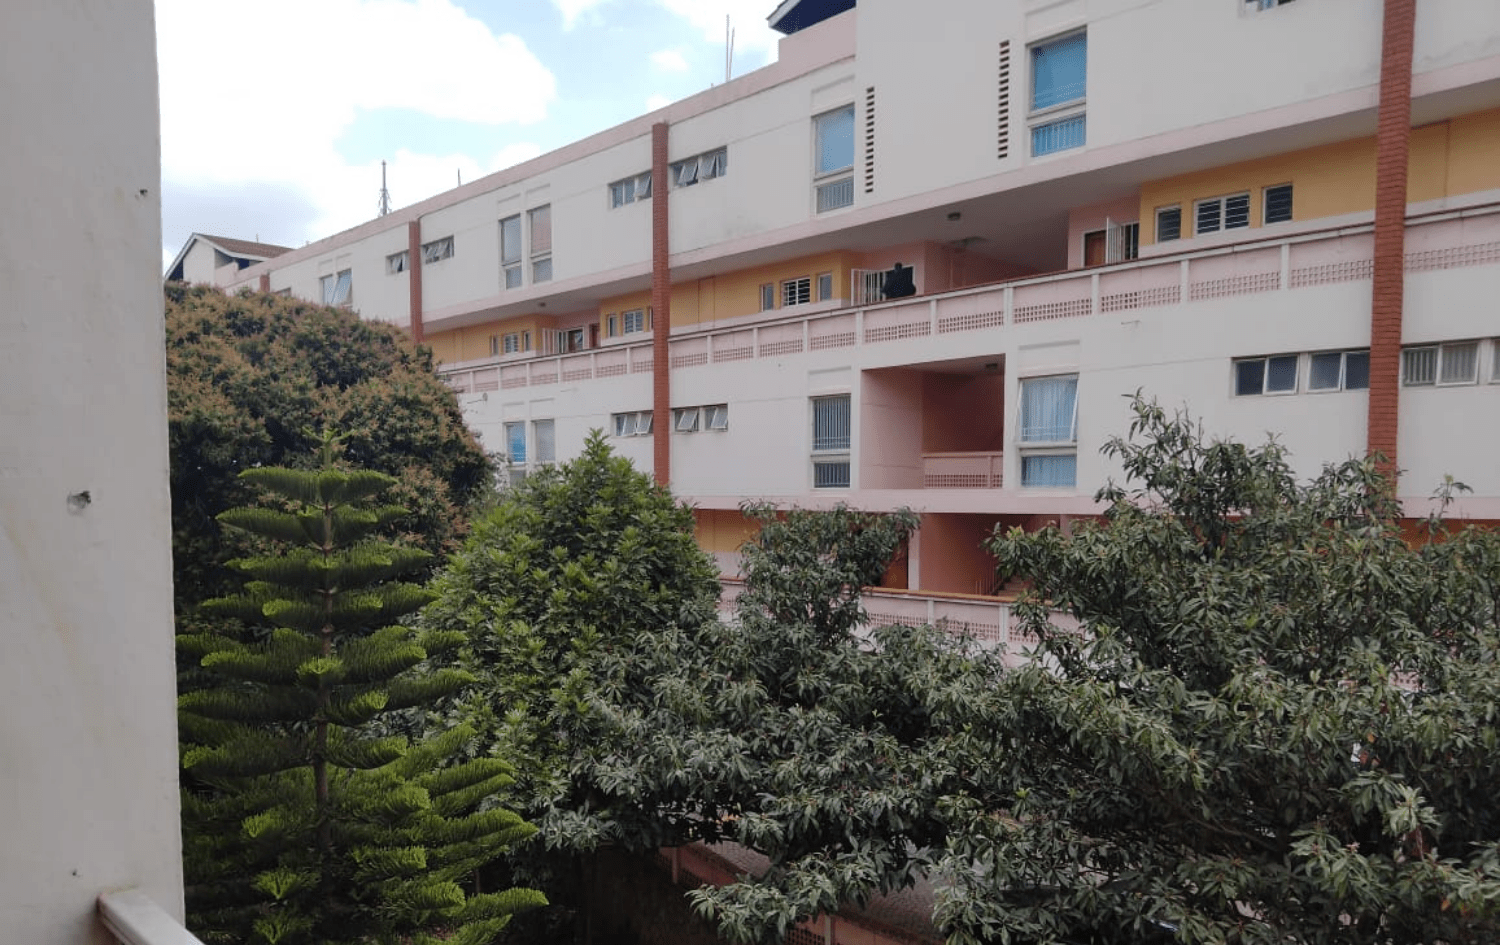 Astoria Apartments